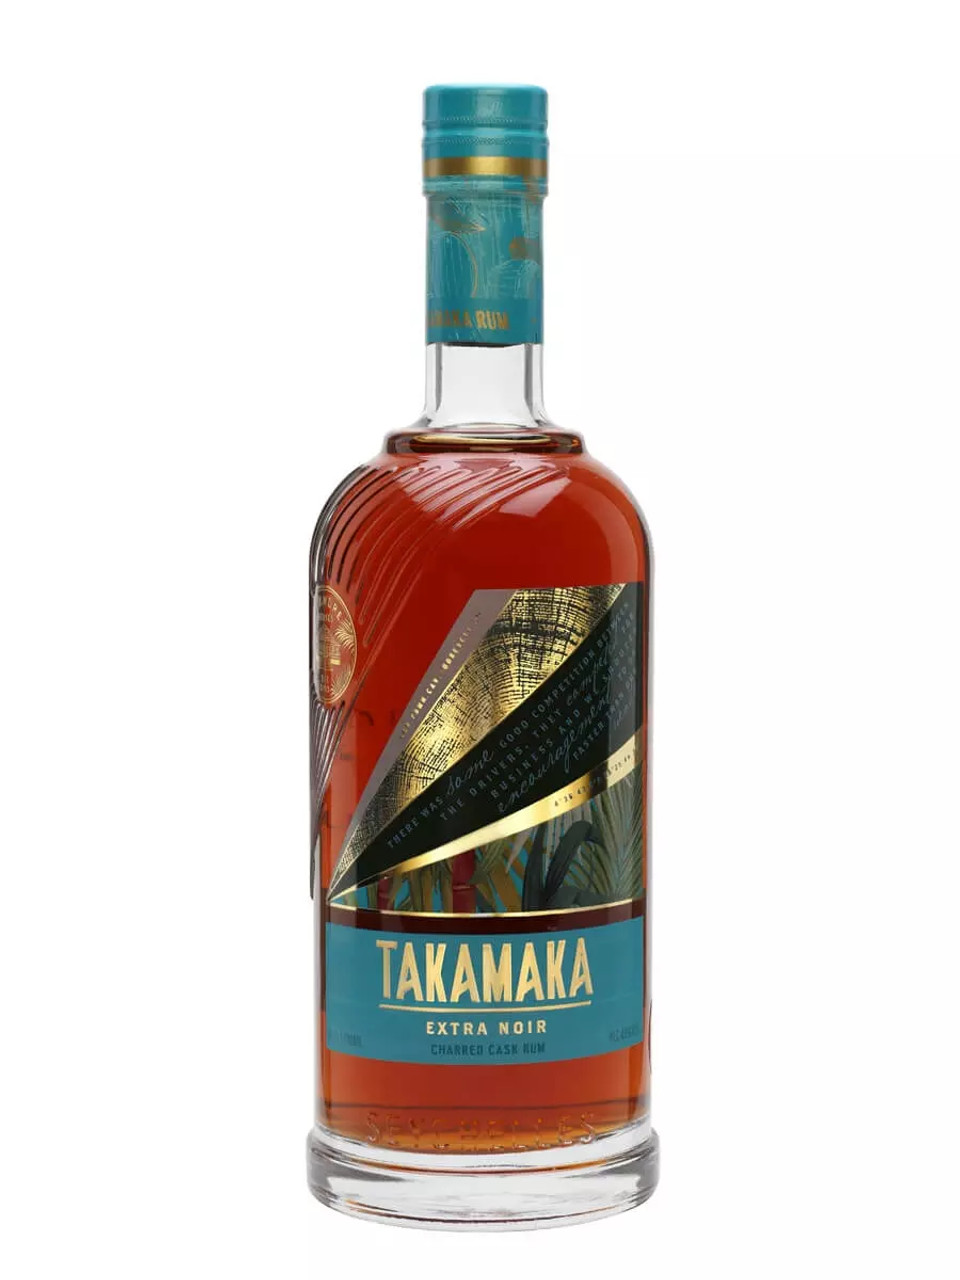 Series Seychelles St Andre Takamaka Noir Rum Extra